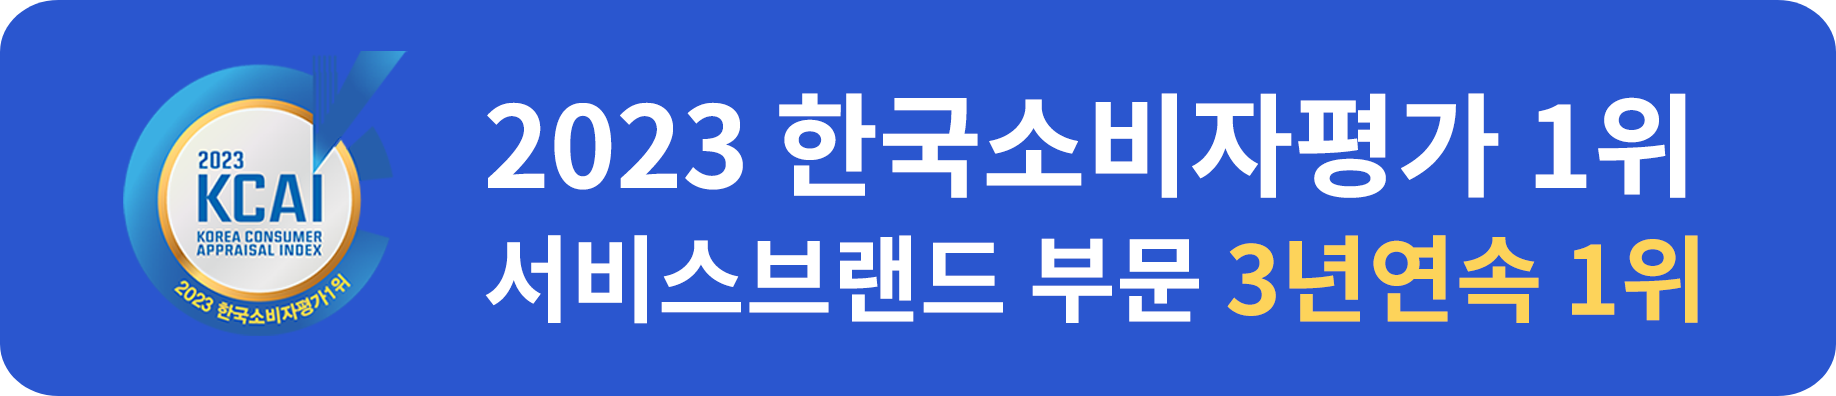 2023 한국소비자평가 1위